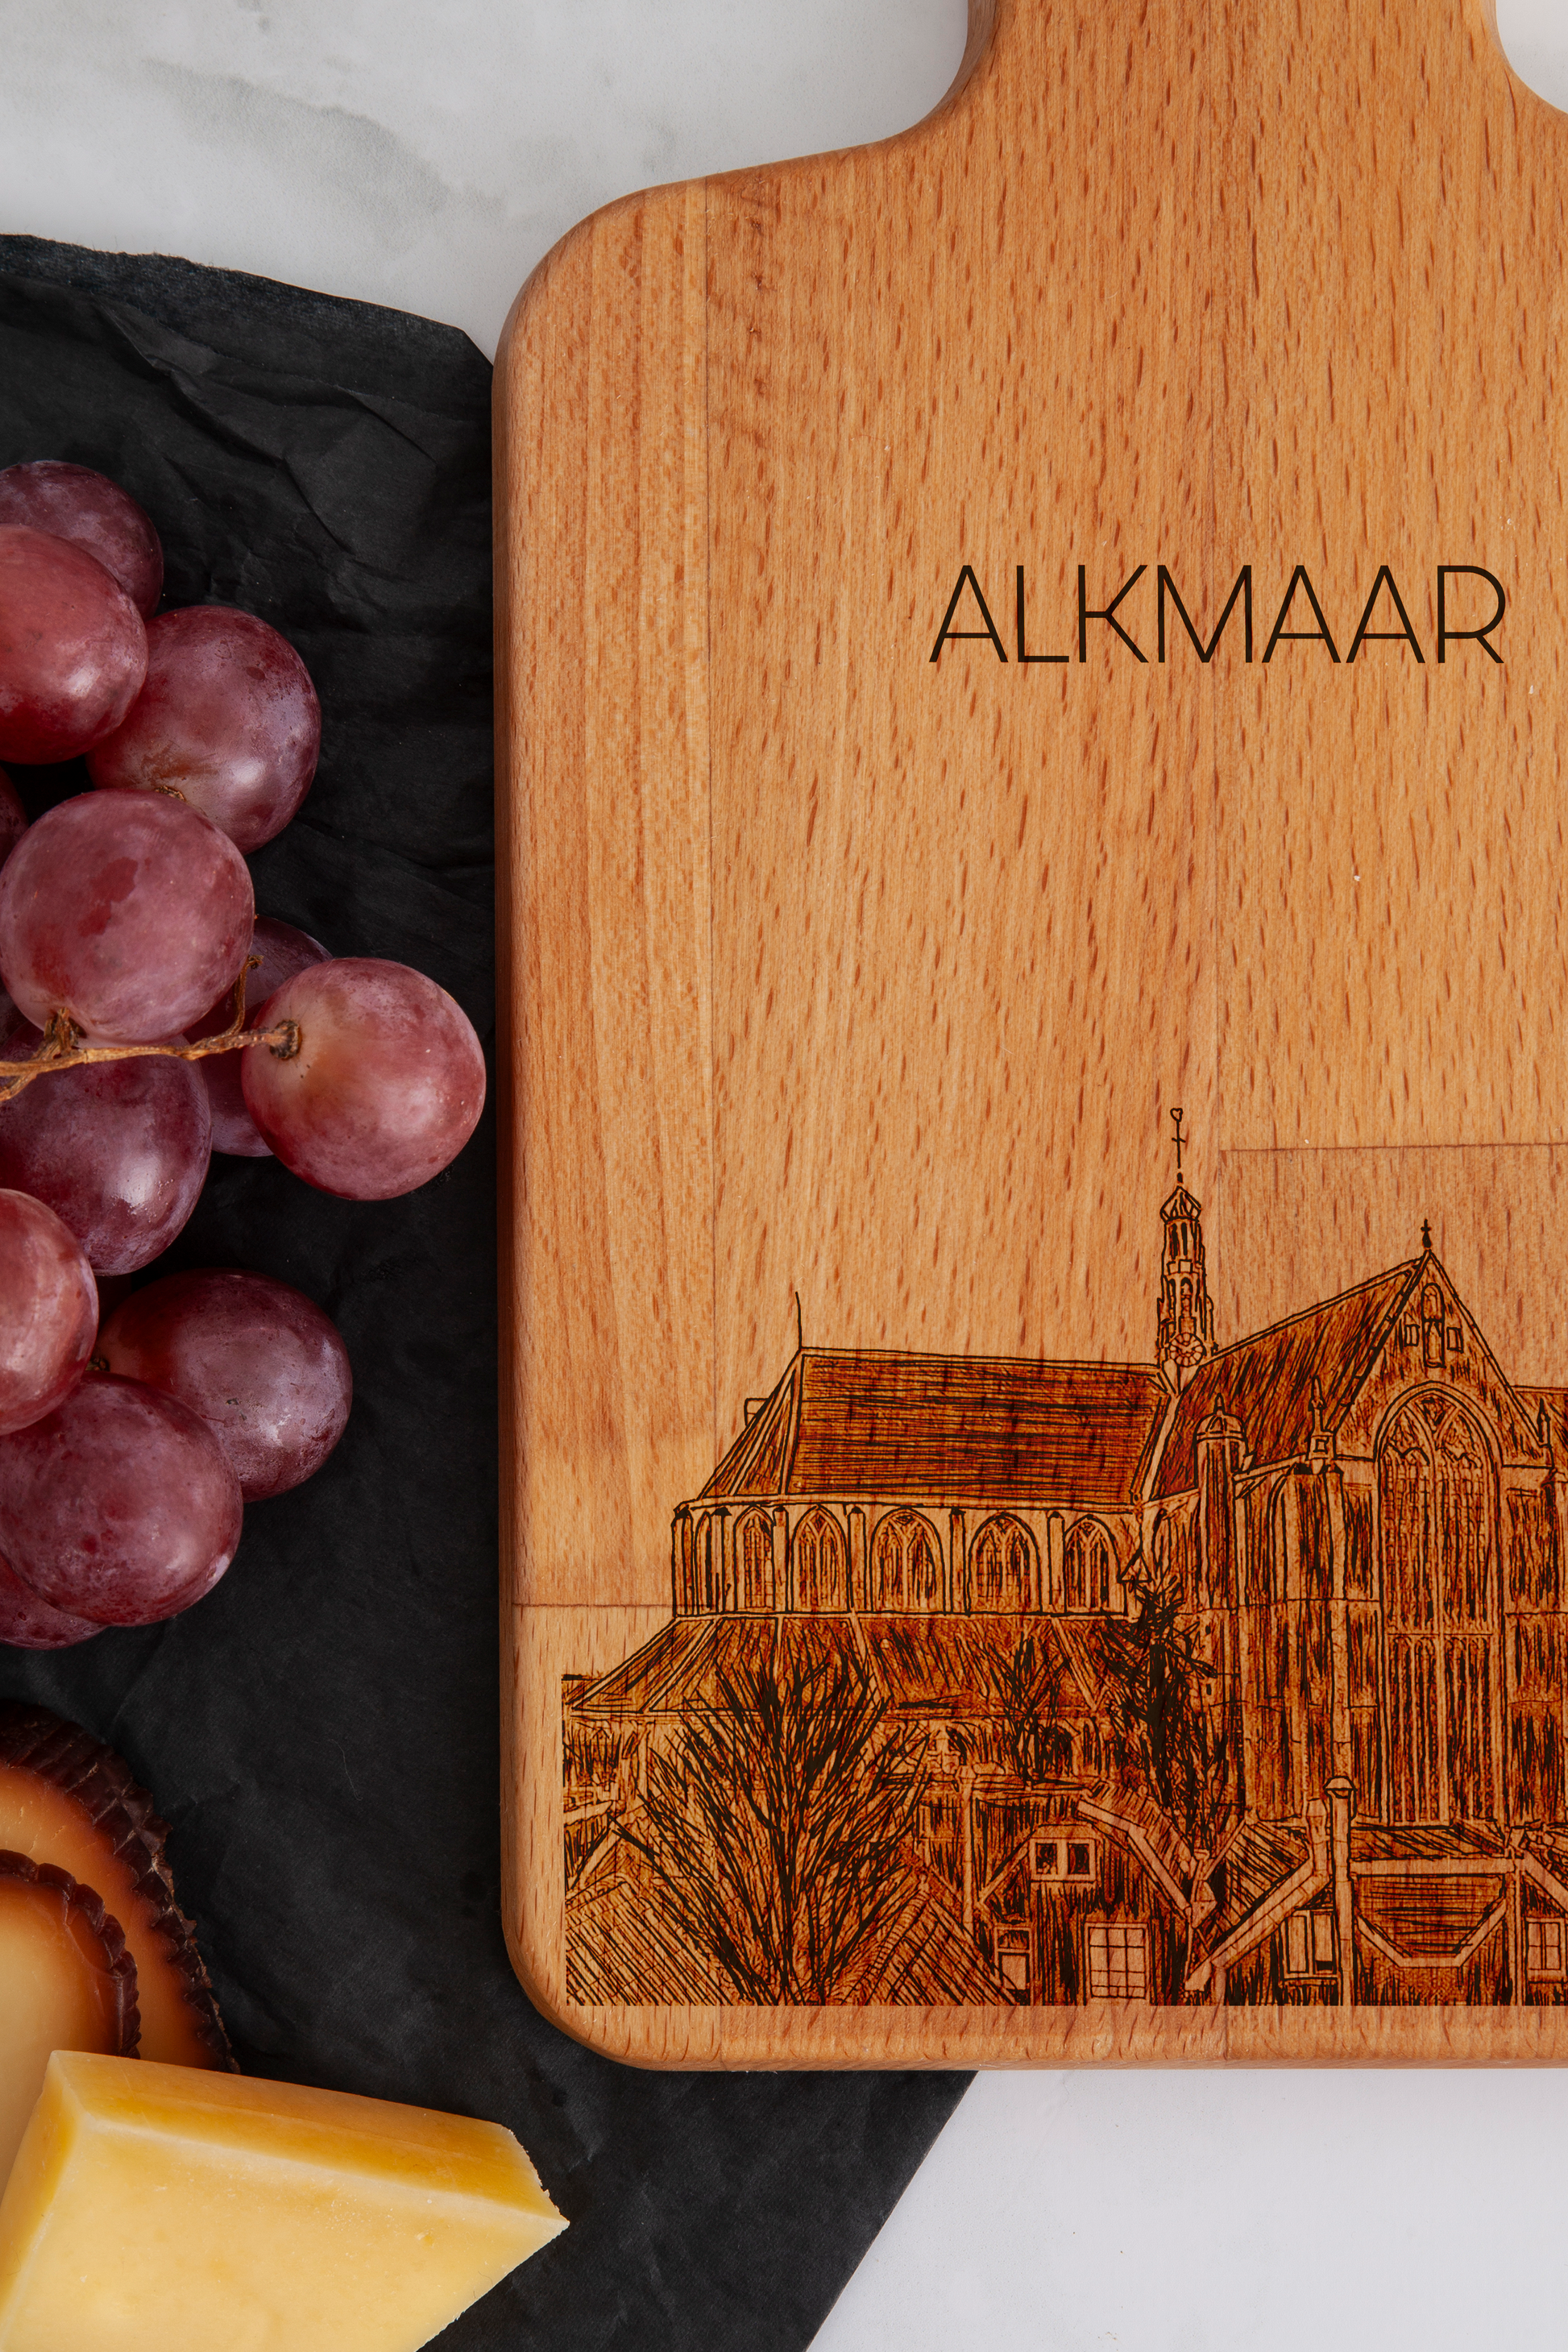 Alkmaar, Grote Kerk, cheese board, close-up